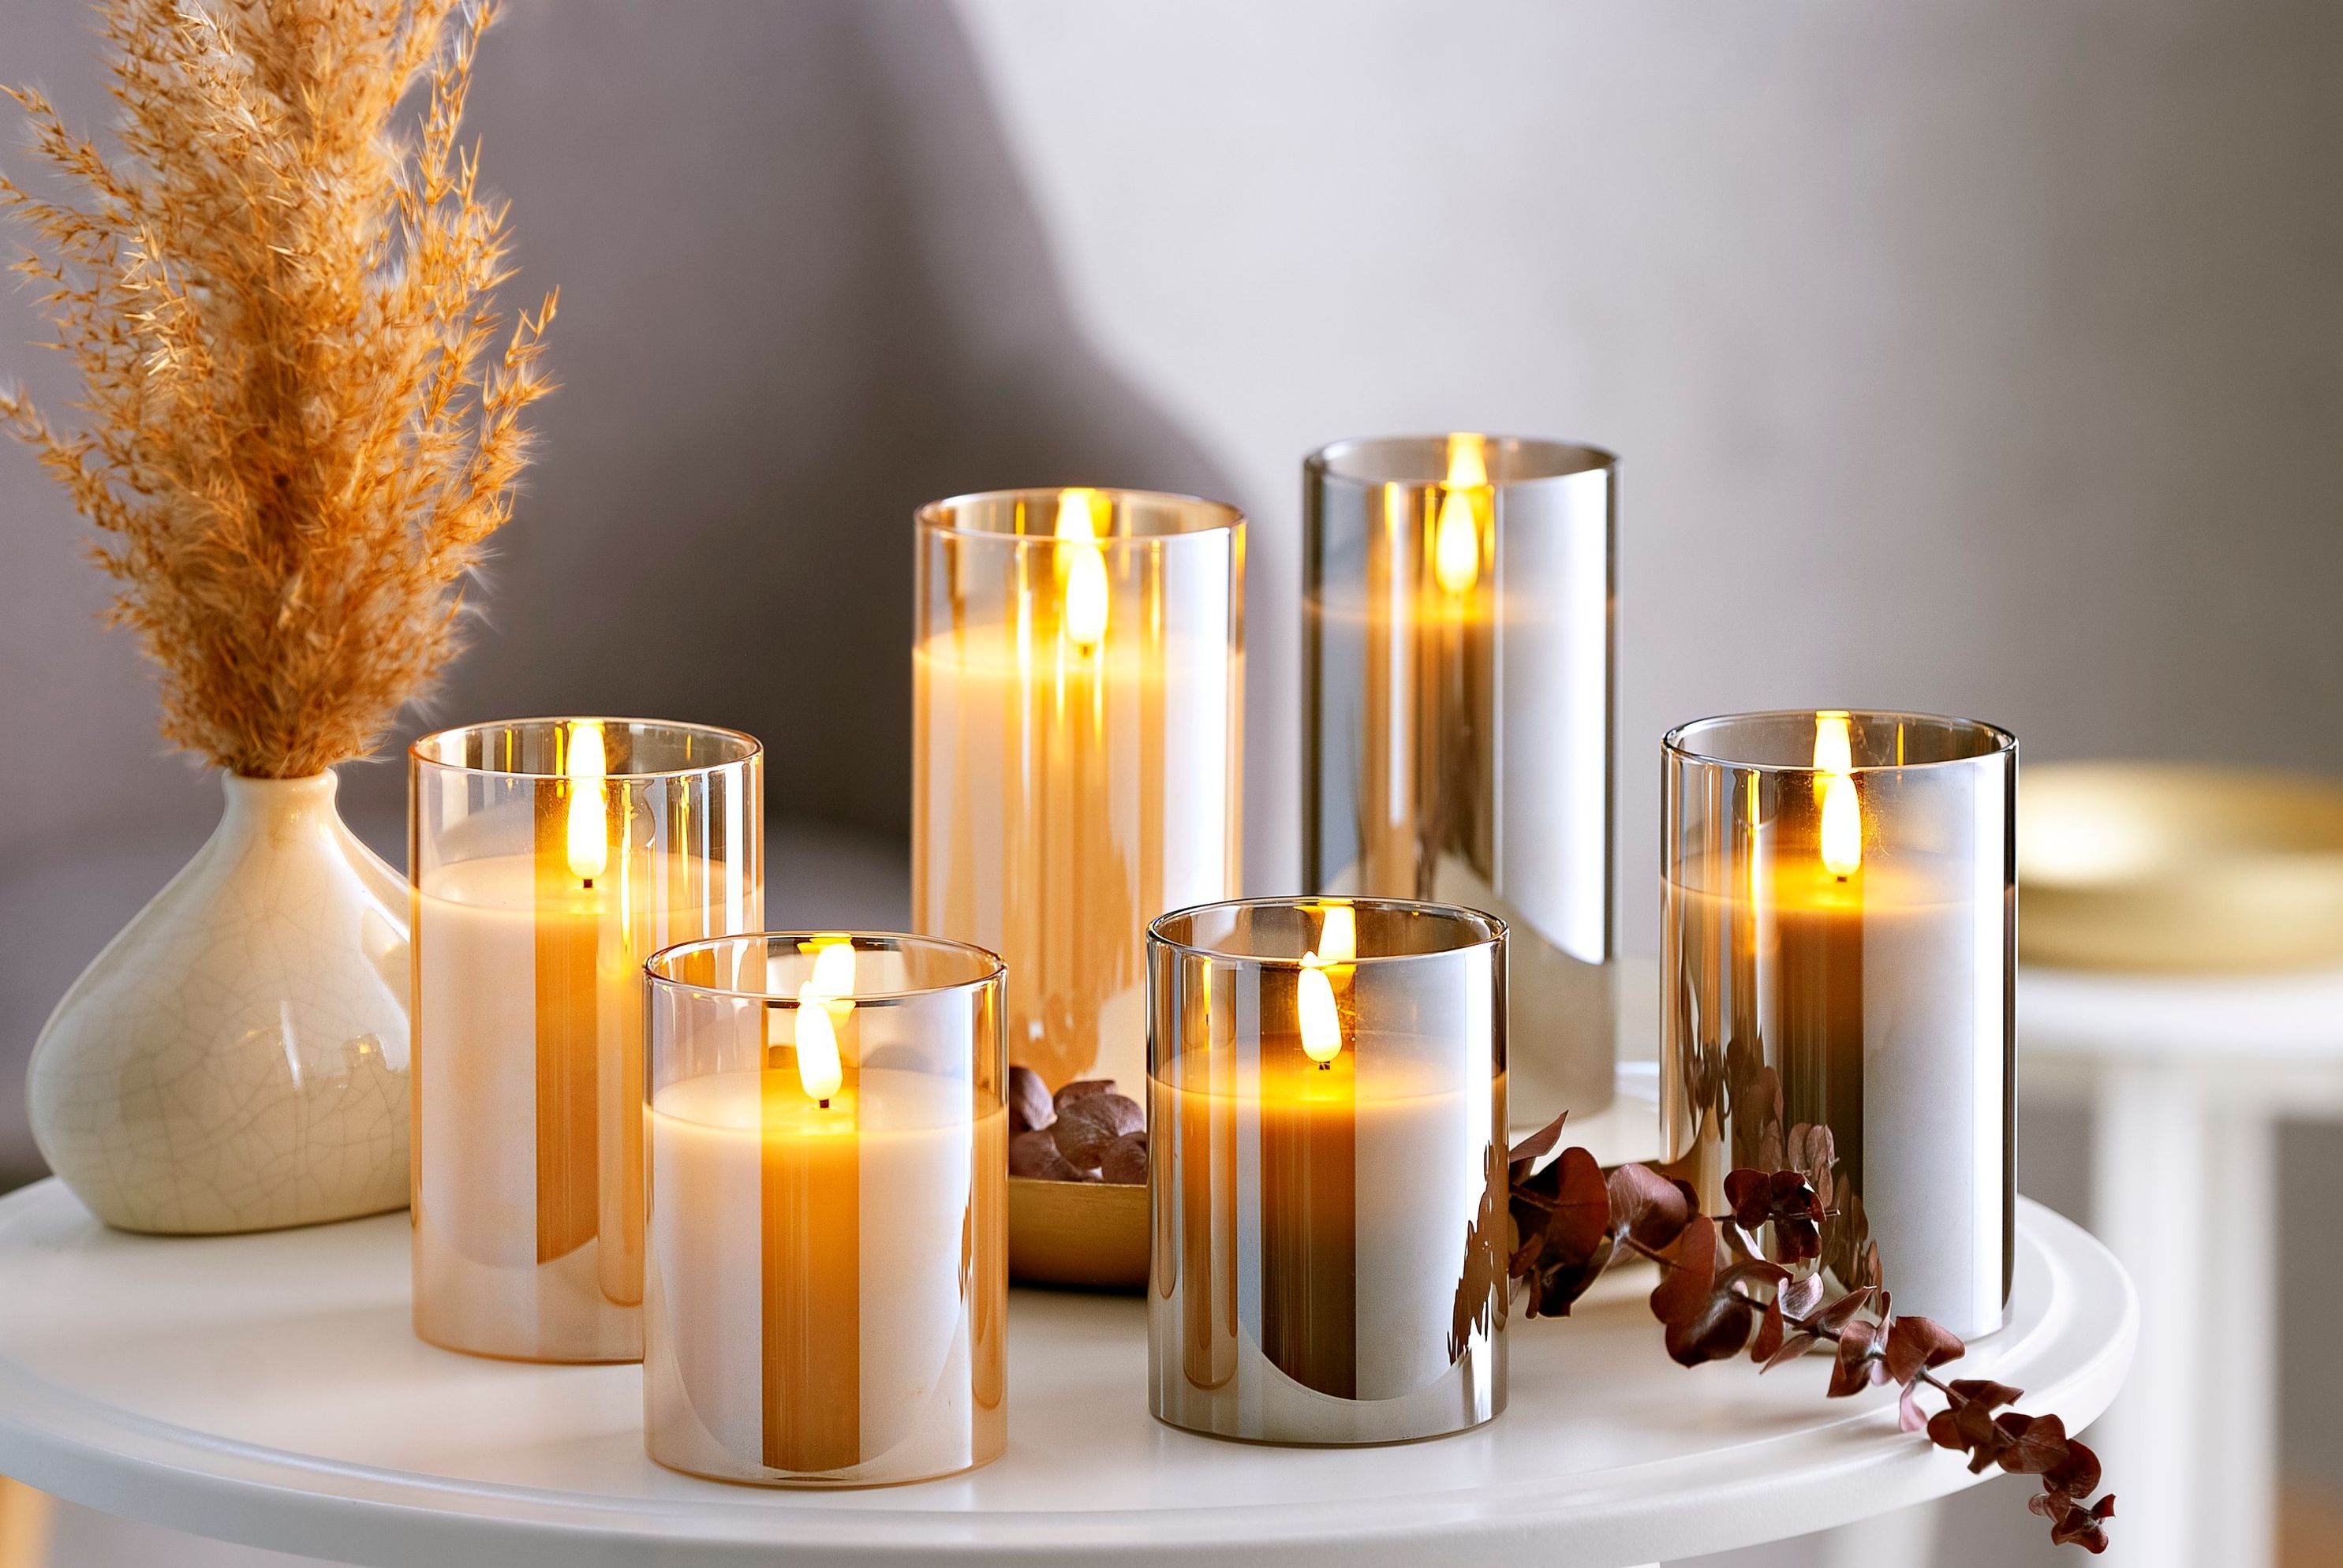 LED-Kerzen im Glas 3er-Set Farbe: amber bestellen | Weltbild.de